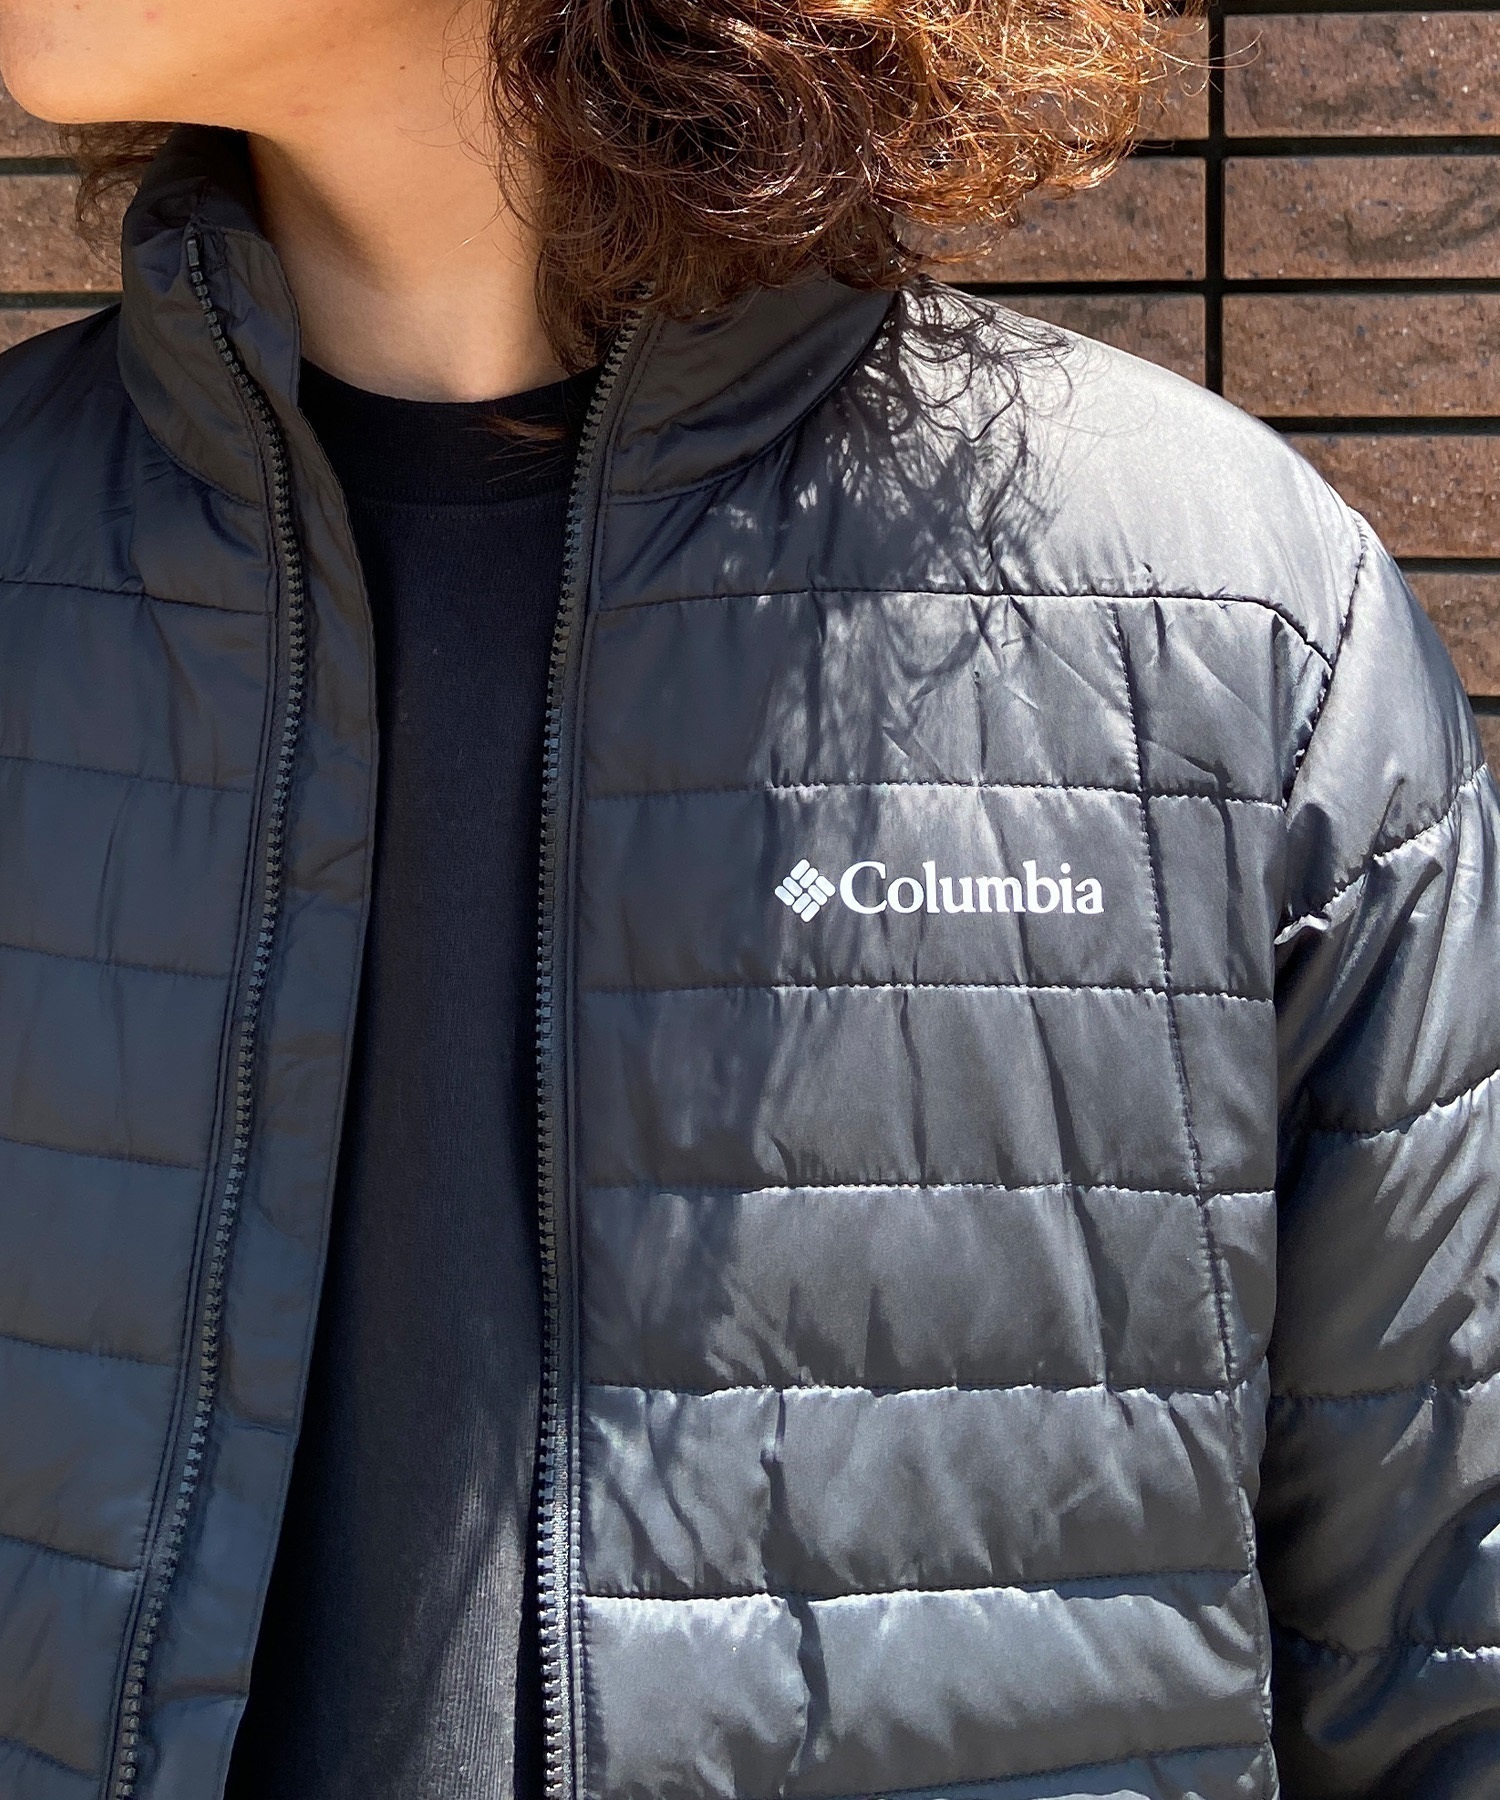 【マトメガイ対象】Columbia/コロンビア Cloverdale Interchange Jacket クローバーデール インターチェンジ メンズ ジャケット 3WAY 防水 WE1489(010-M)